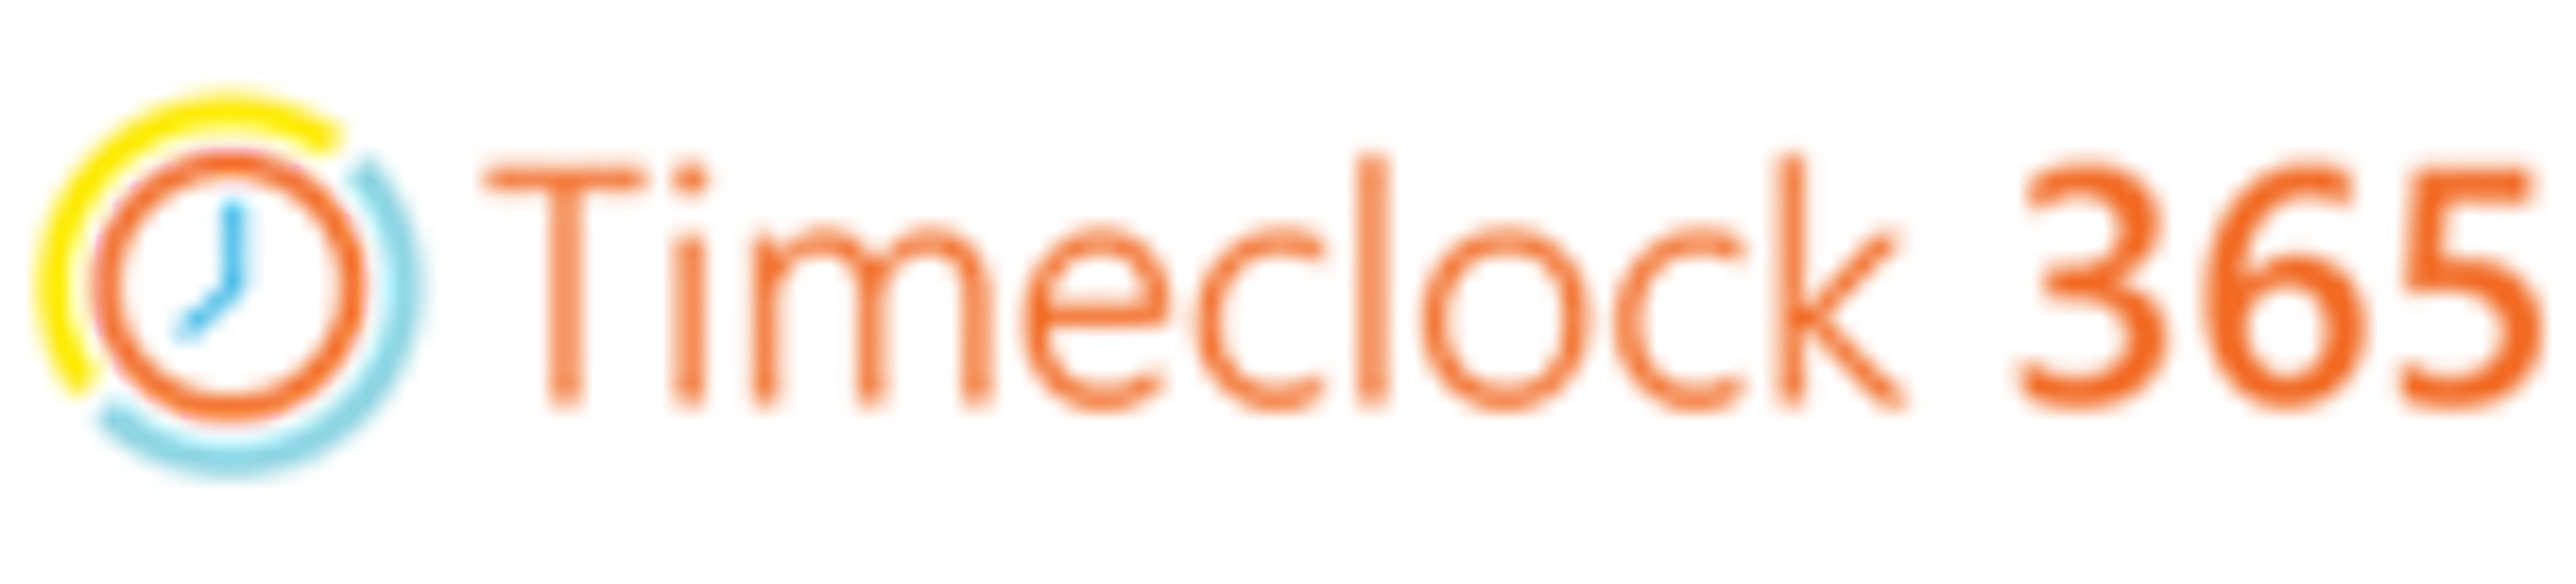 Timeclock 365 Logo